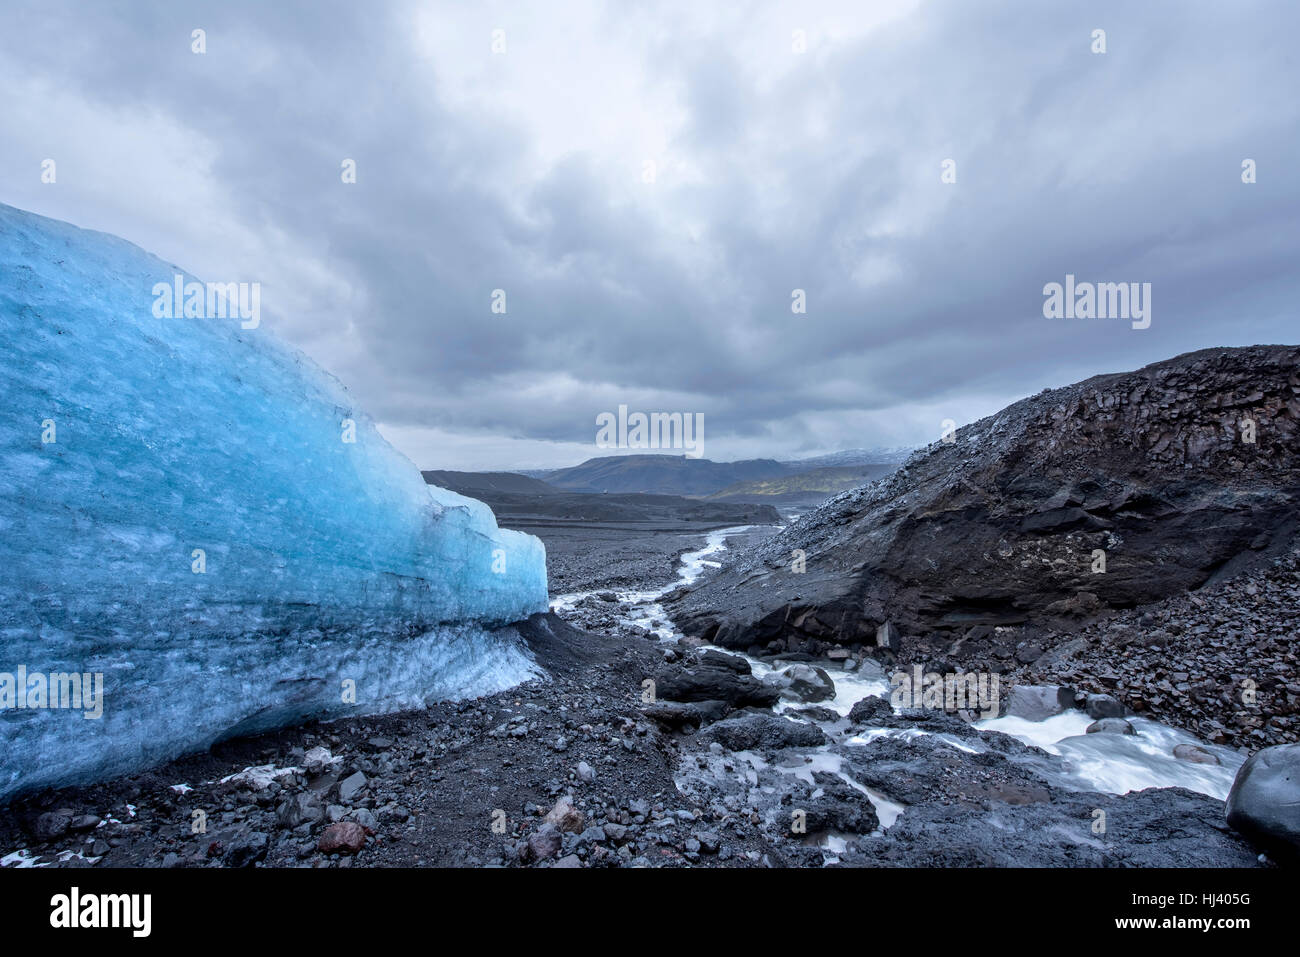 Le côté d'un glacier de fusion dans un boîtier Islande désert forme un petit cours d'eau bas de la montagne au cours d'un jour nuageux, gris. Banque D'Images